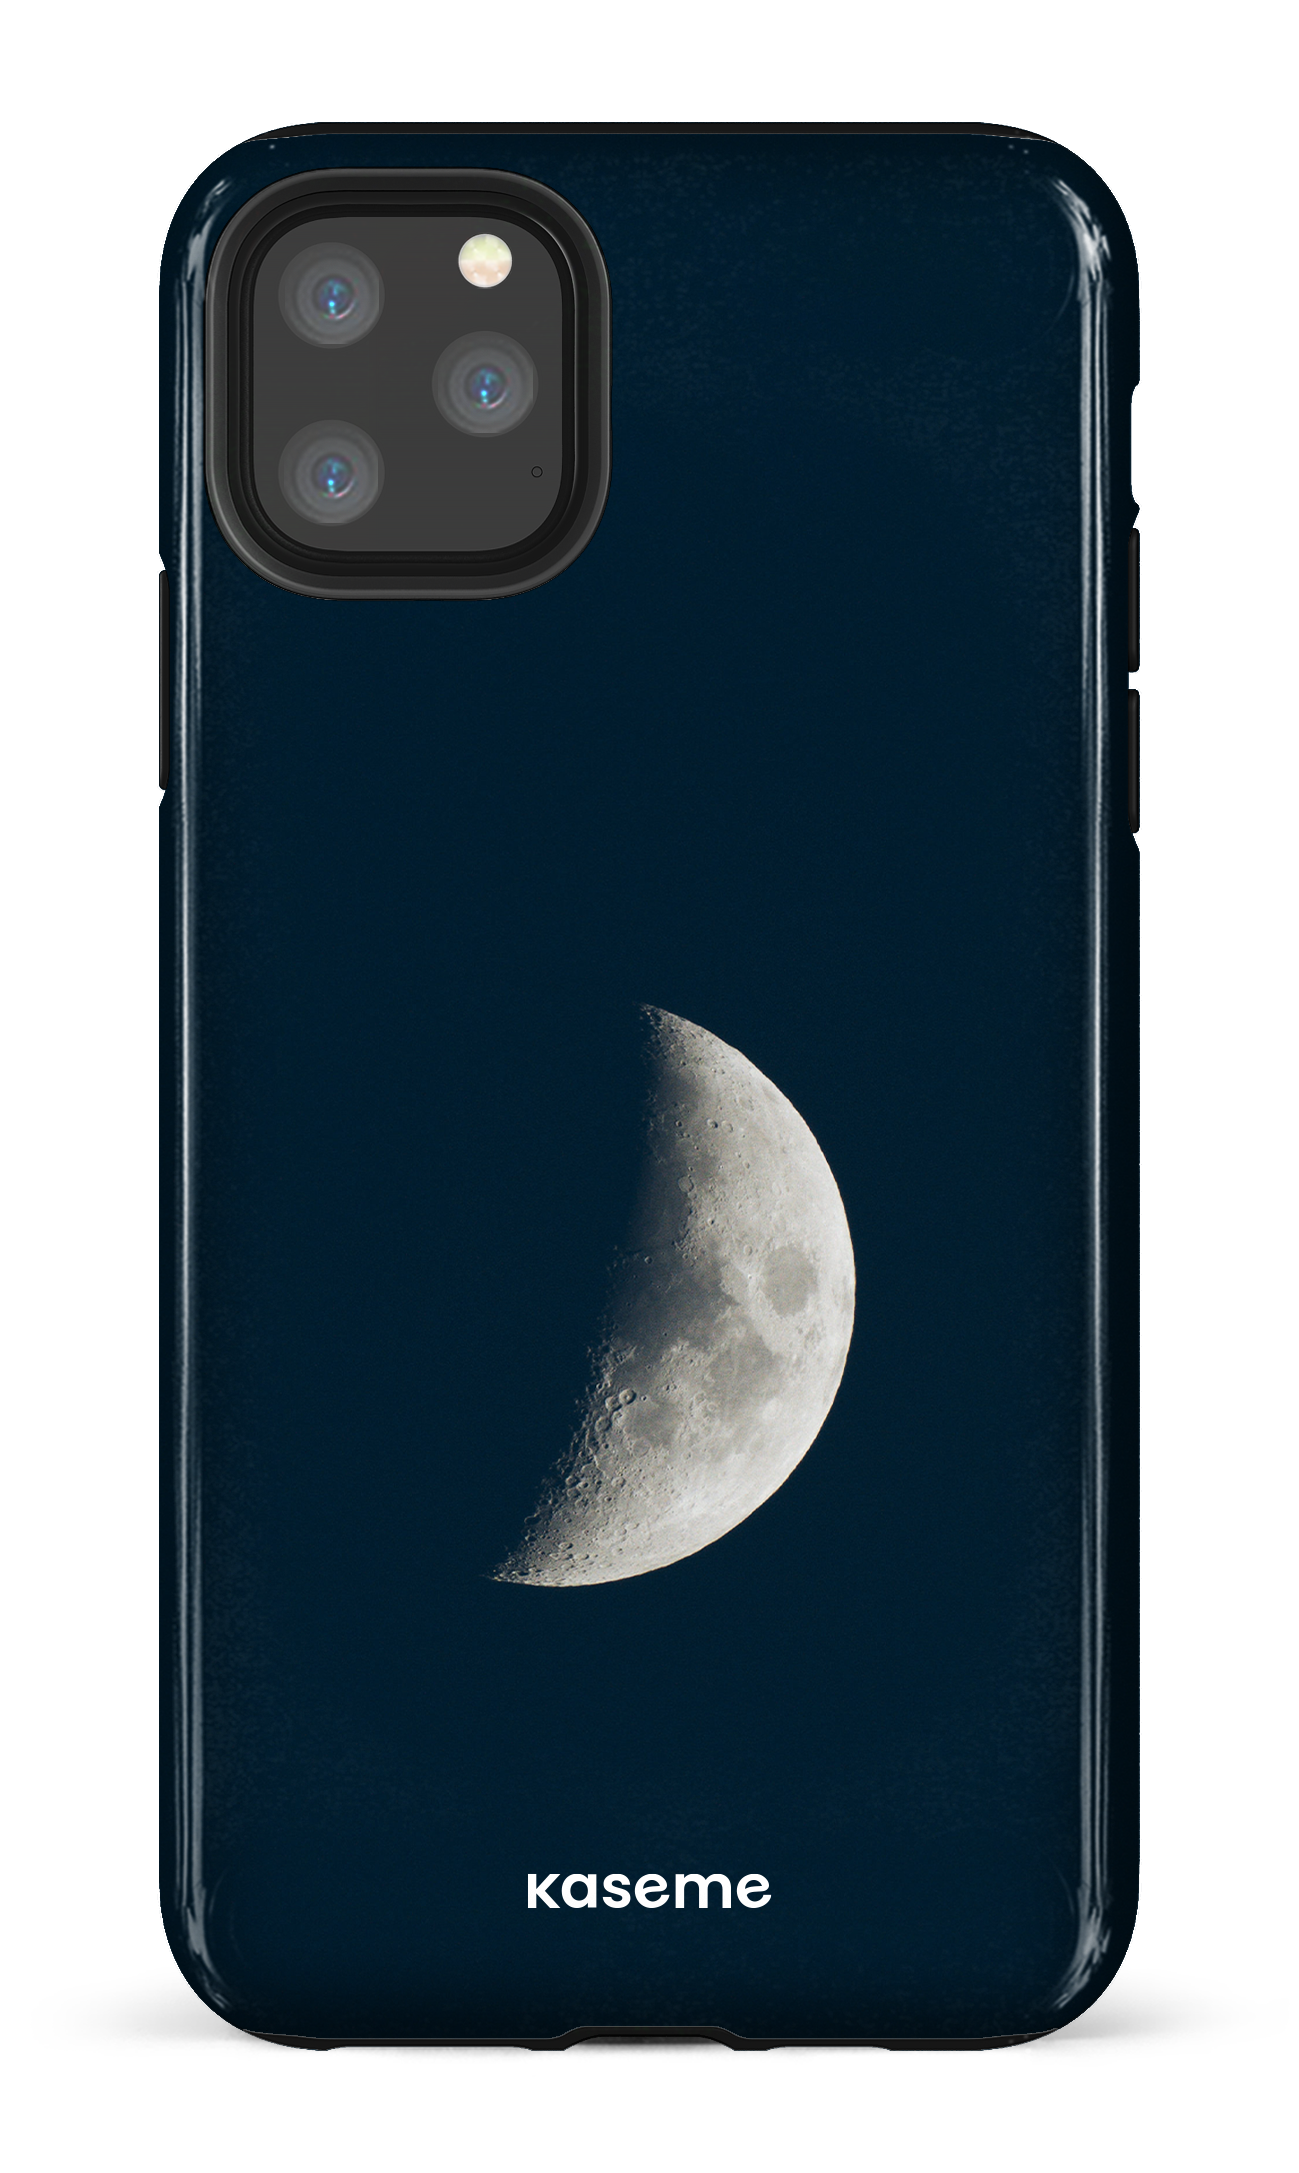 La Luna by Yulneverroamalone - iPhone 11 Pro Max